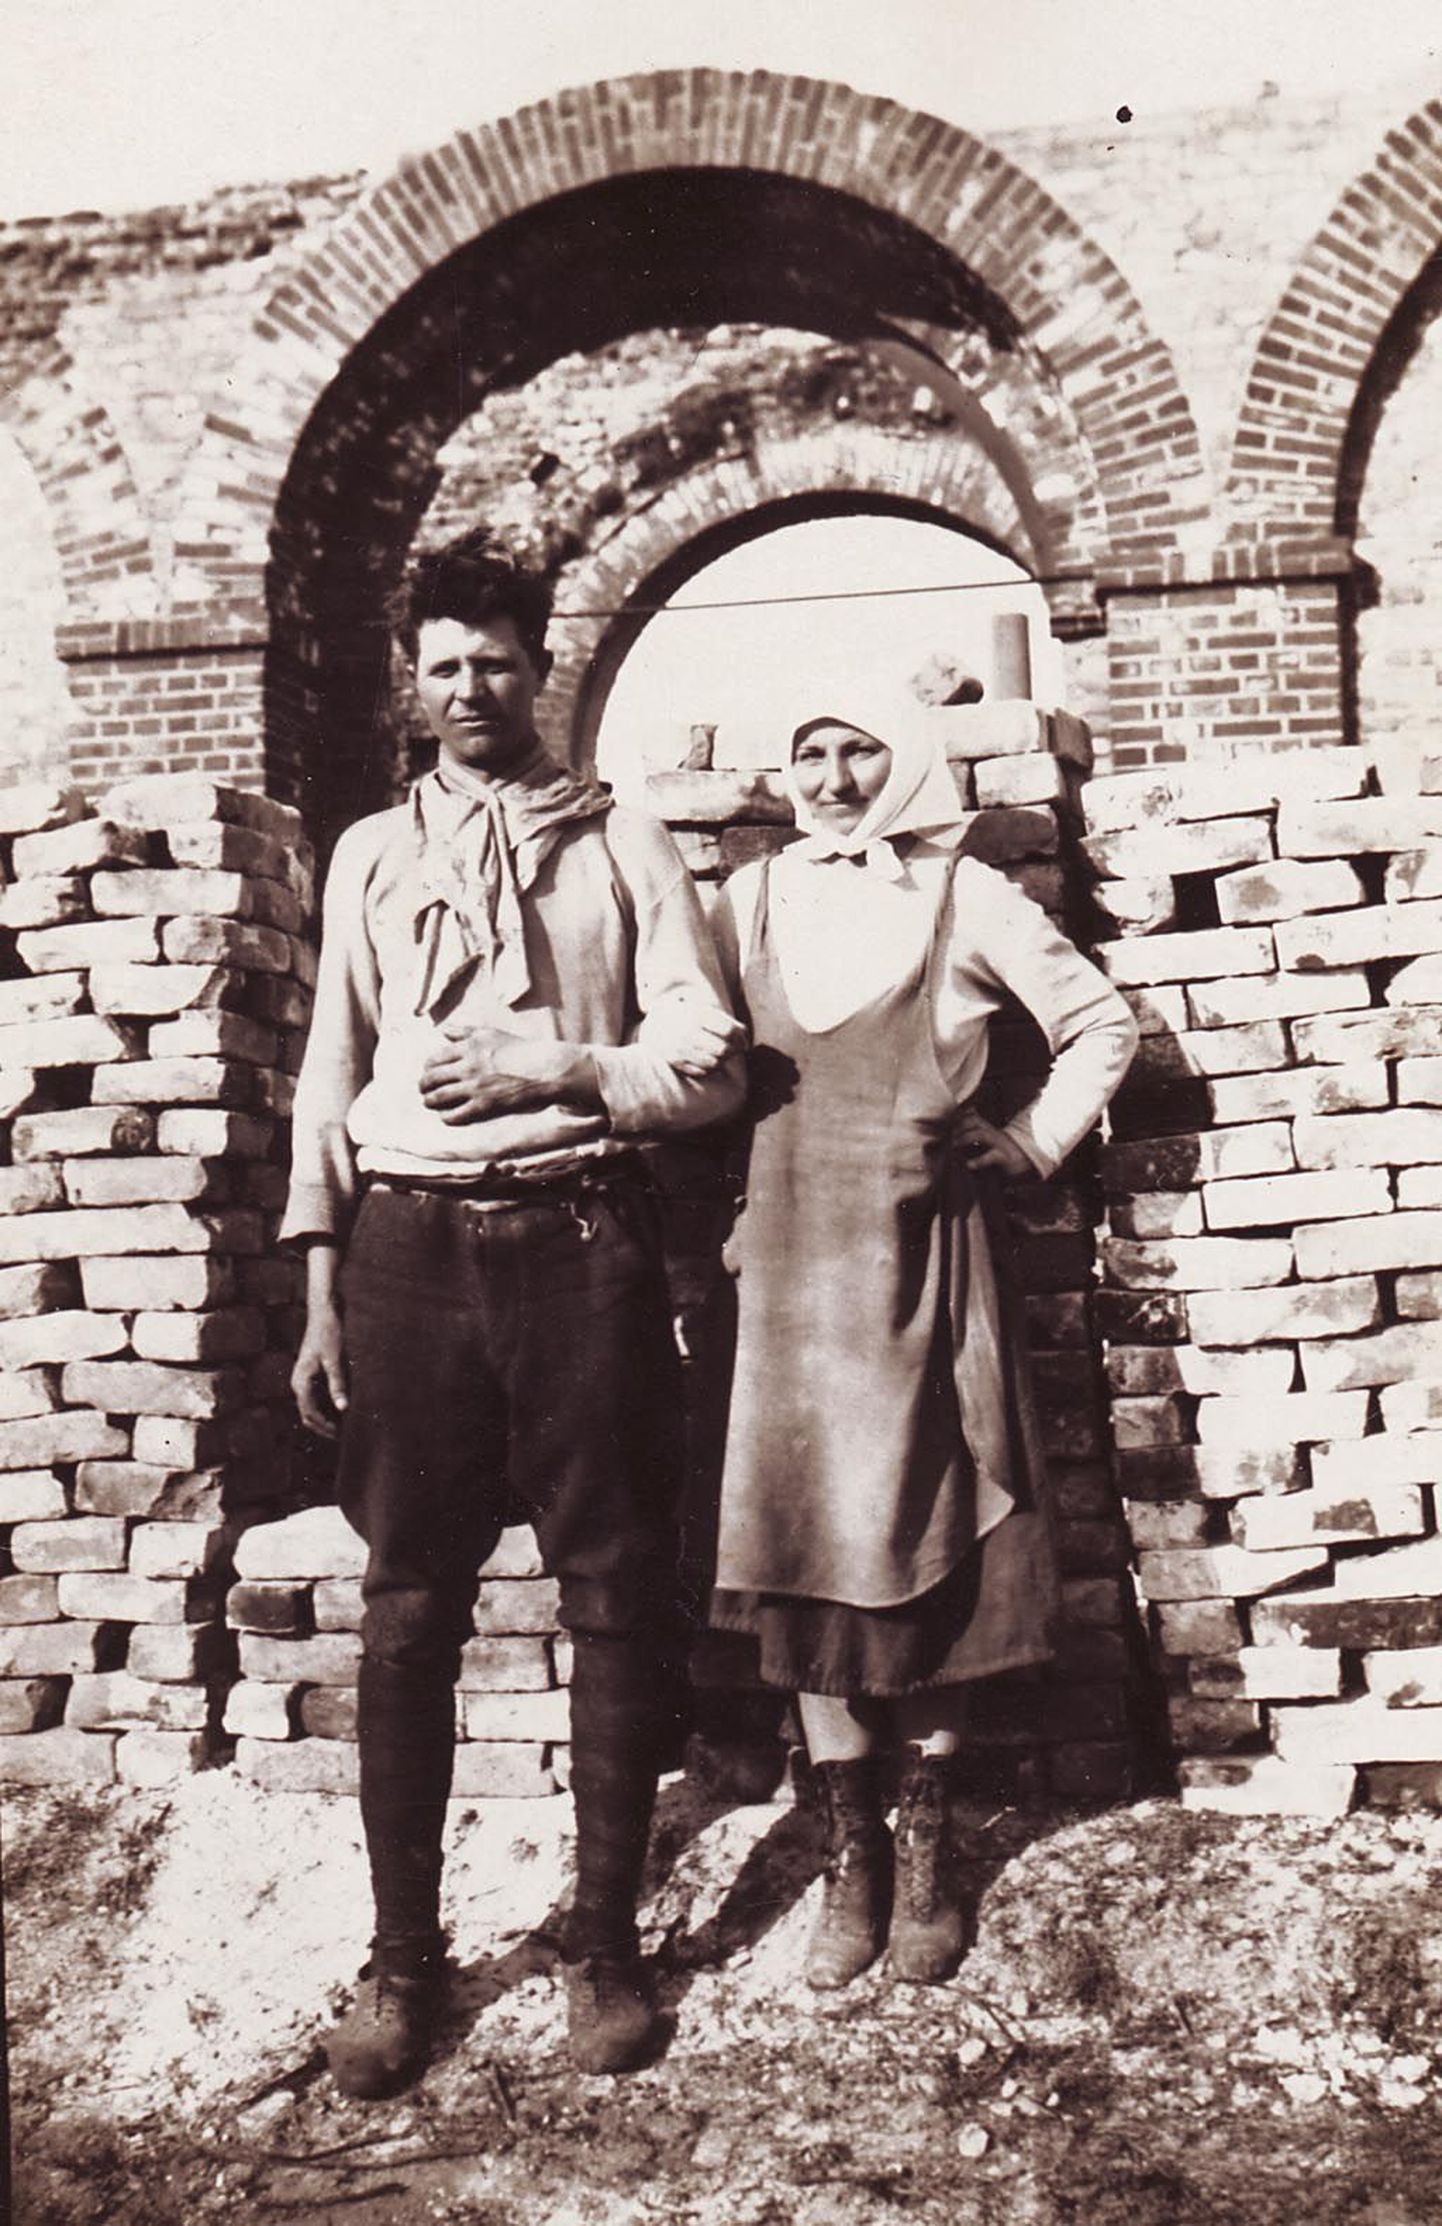 Tüüpe lammutustöödelt: Martin Thomson koos naiskaaslasega Waldhofi varemete lammutamisel. Foto on tehtud 27. aprillil 1936. aastal.